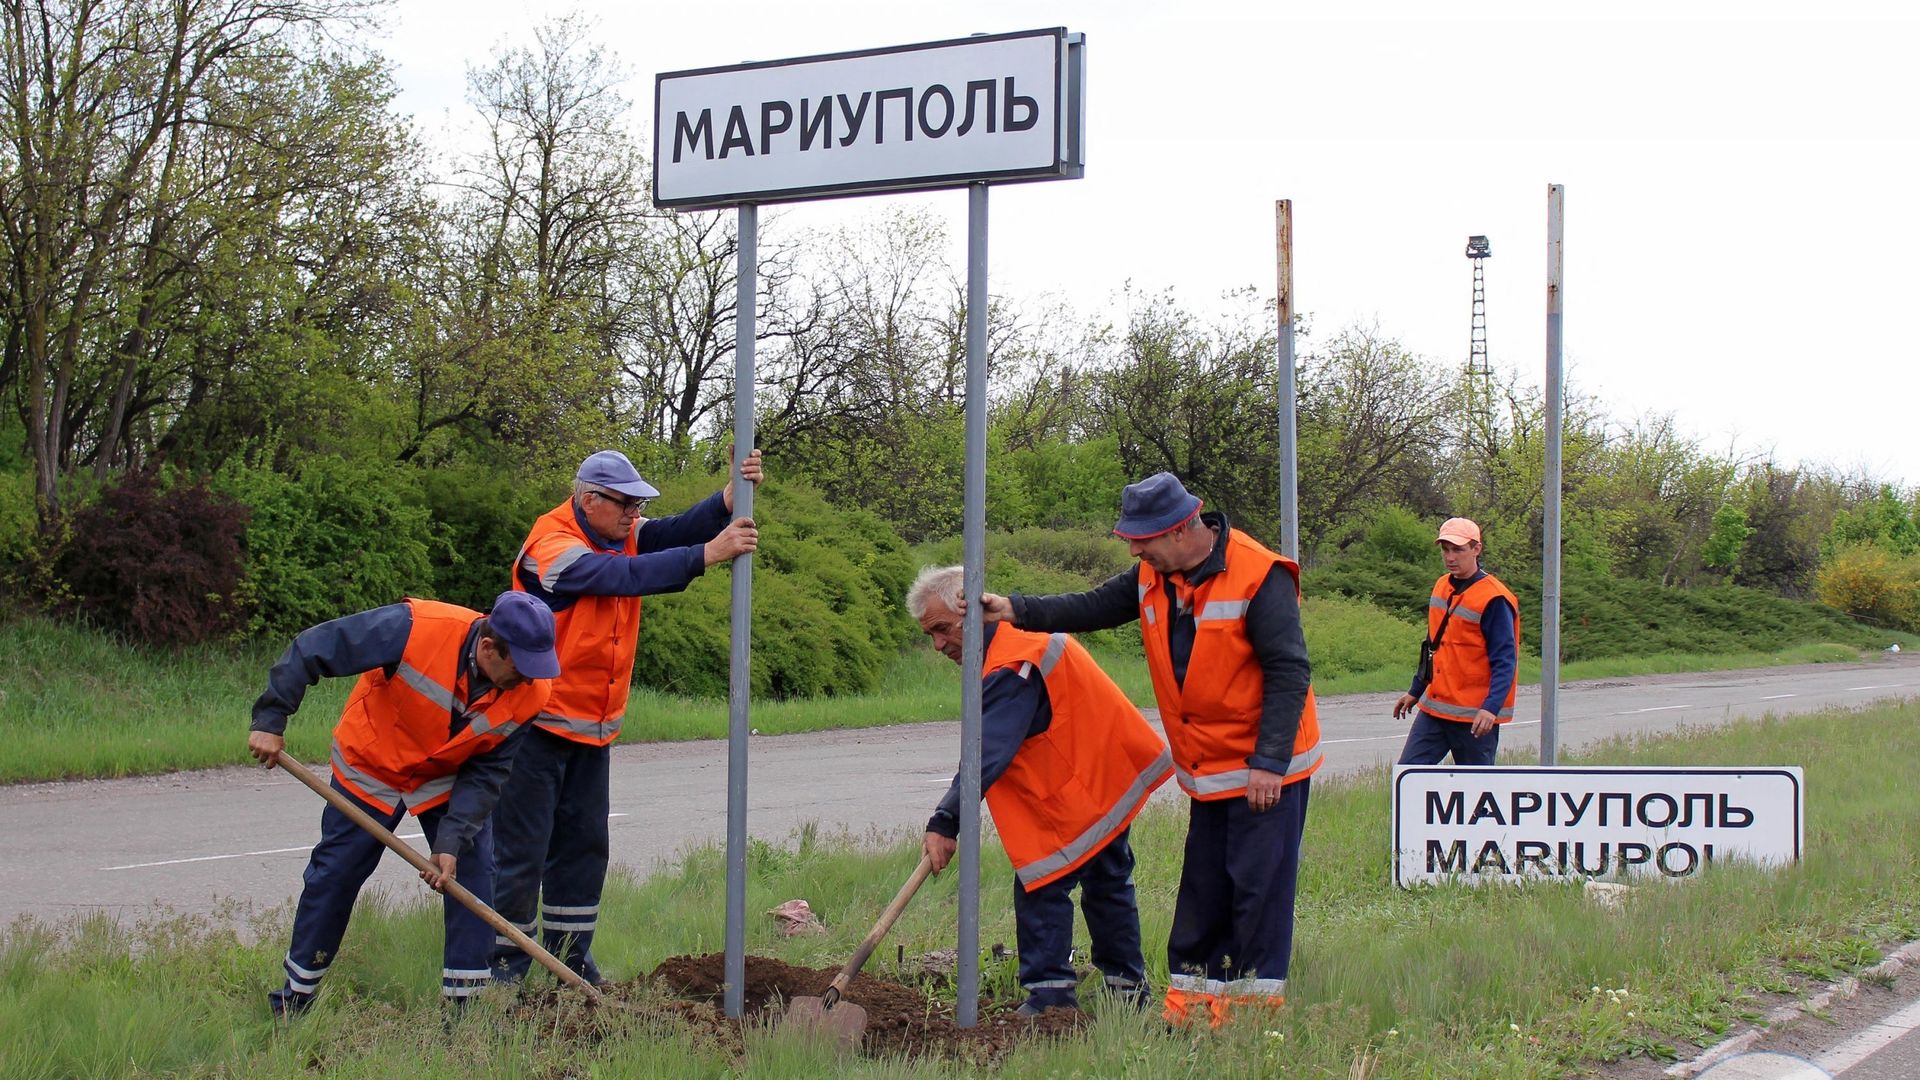 Le ministère des Transports de la république autoproclamée de Donetsk a publié cette photo sur laquelle des ouvriers remplacent les panneaux ukrainiens par des panneaux russes à Marioupol (Ukraine).